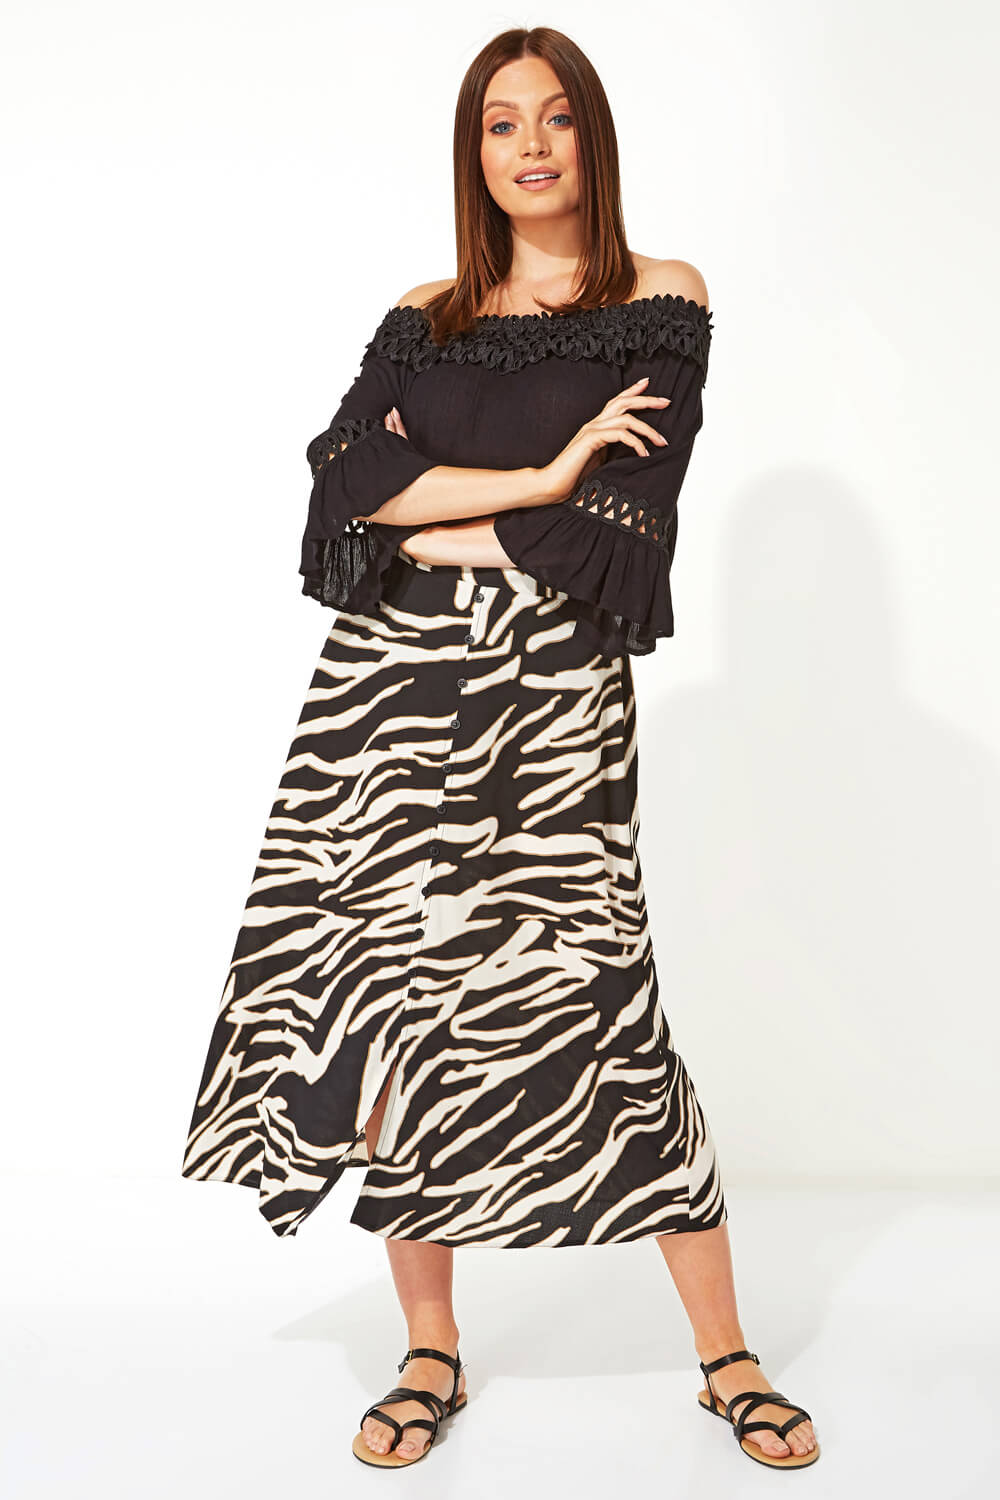 Ivory  Zebra Print Skirt, Image 2 of 4